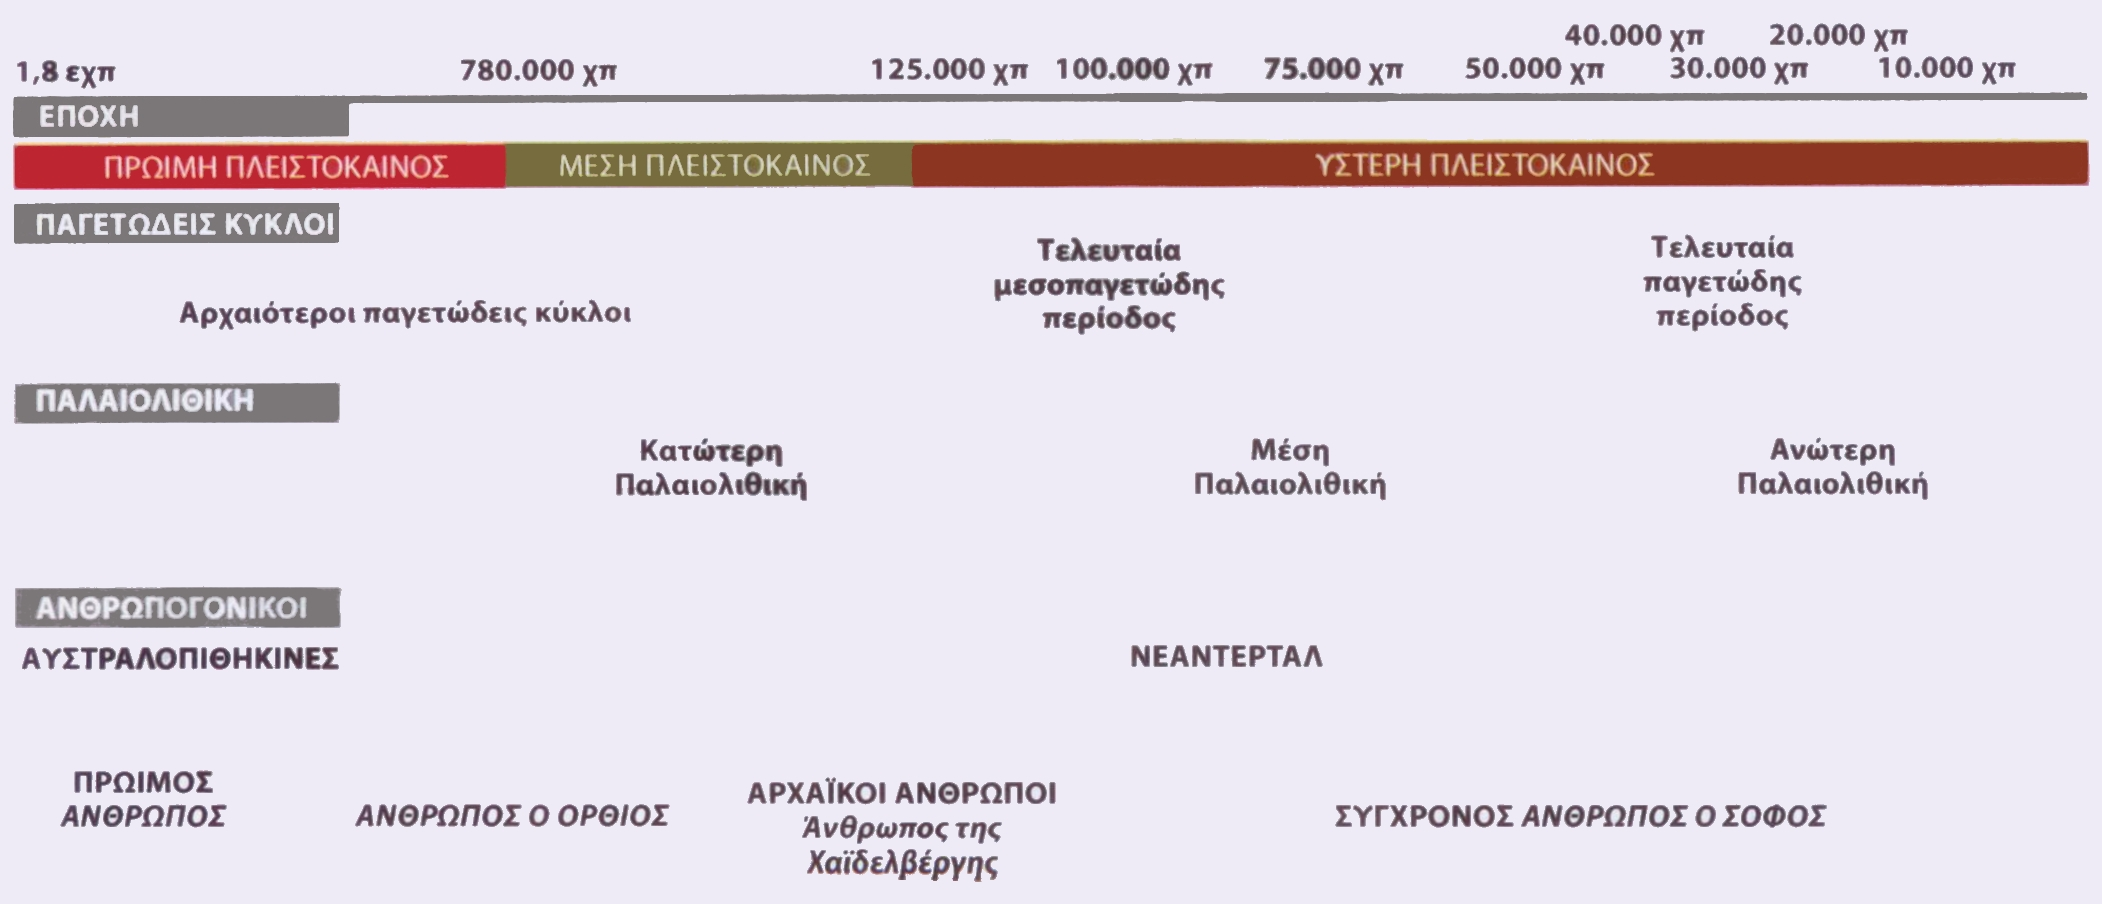 Οι Νεάντερταλ: οι αρχαϊκοί άνθρωποι της Ύστερης Πλειστοκαίνου Τα απολιθώματα των Νεάντερταλ χρονολογούνται έως και 130.